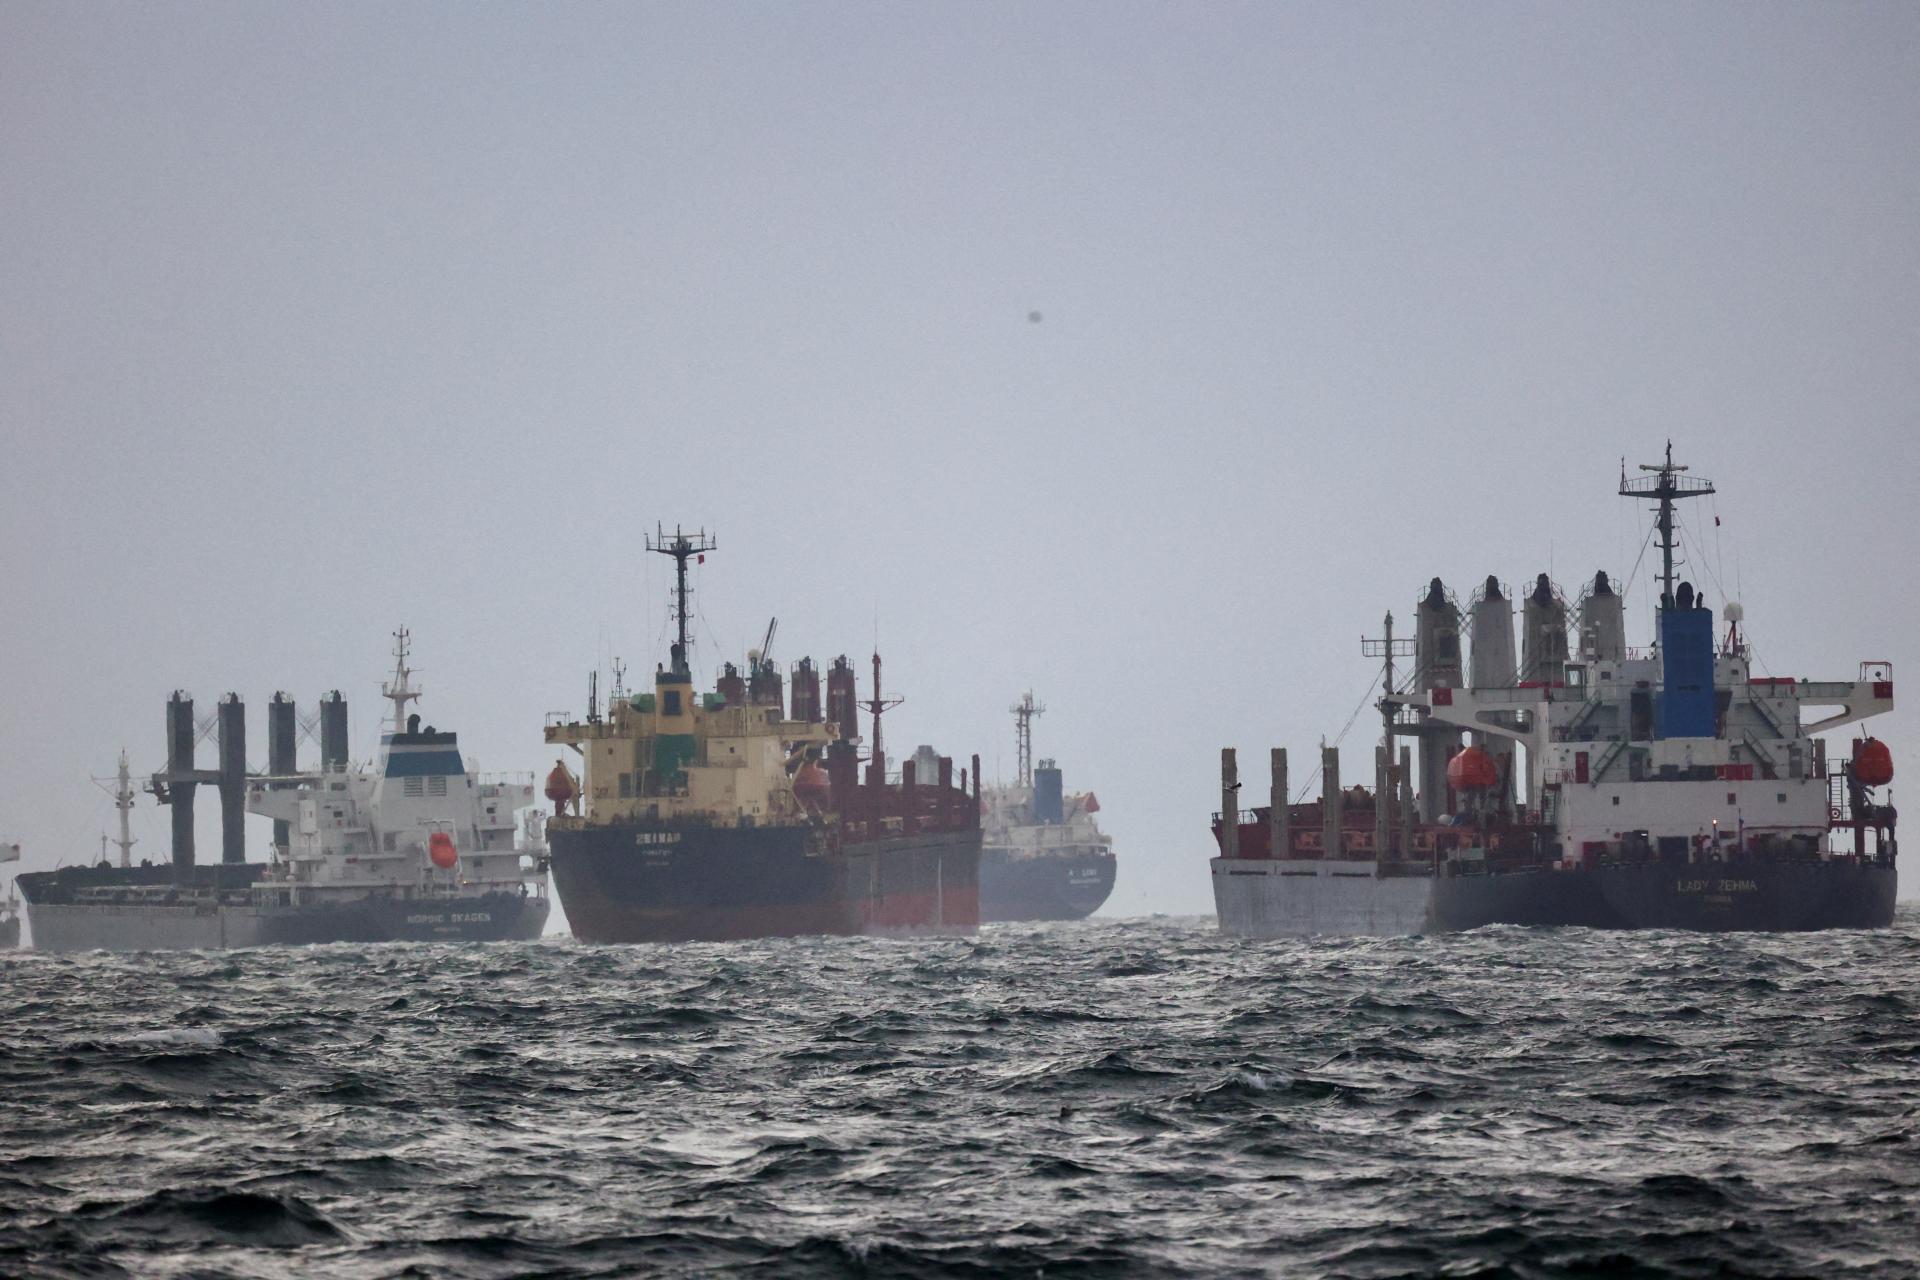 Ukrajina znižuje poistné pre lode vstupujúce do jej prístavov v Čiernom mori, napriek neutíchajúcej vojne